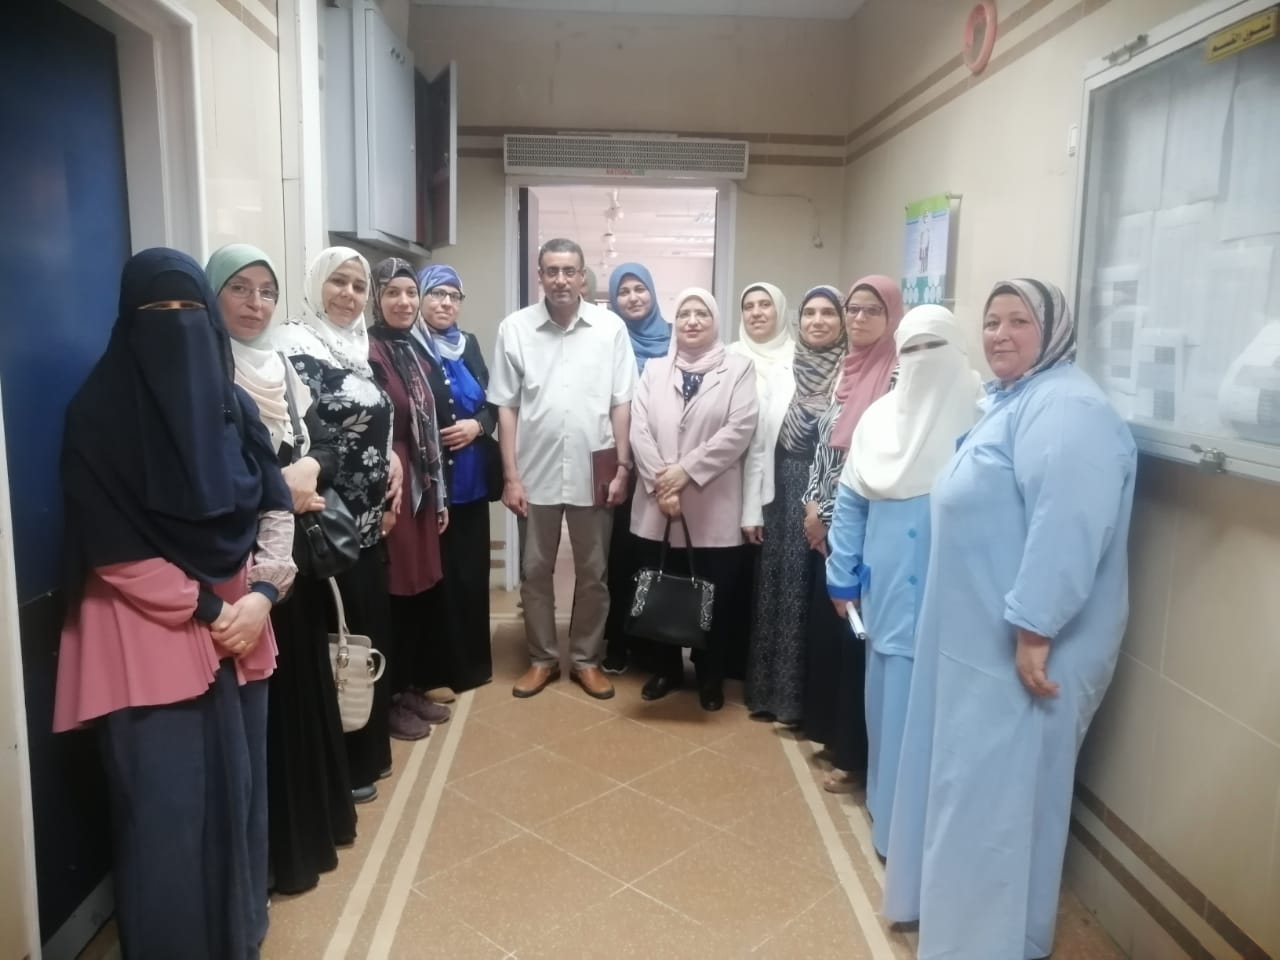 استكمال الدورة التدريبية للتمريض بوحدة أورام النساء جامعة المنصورة